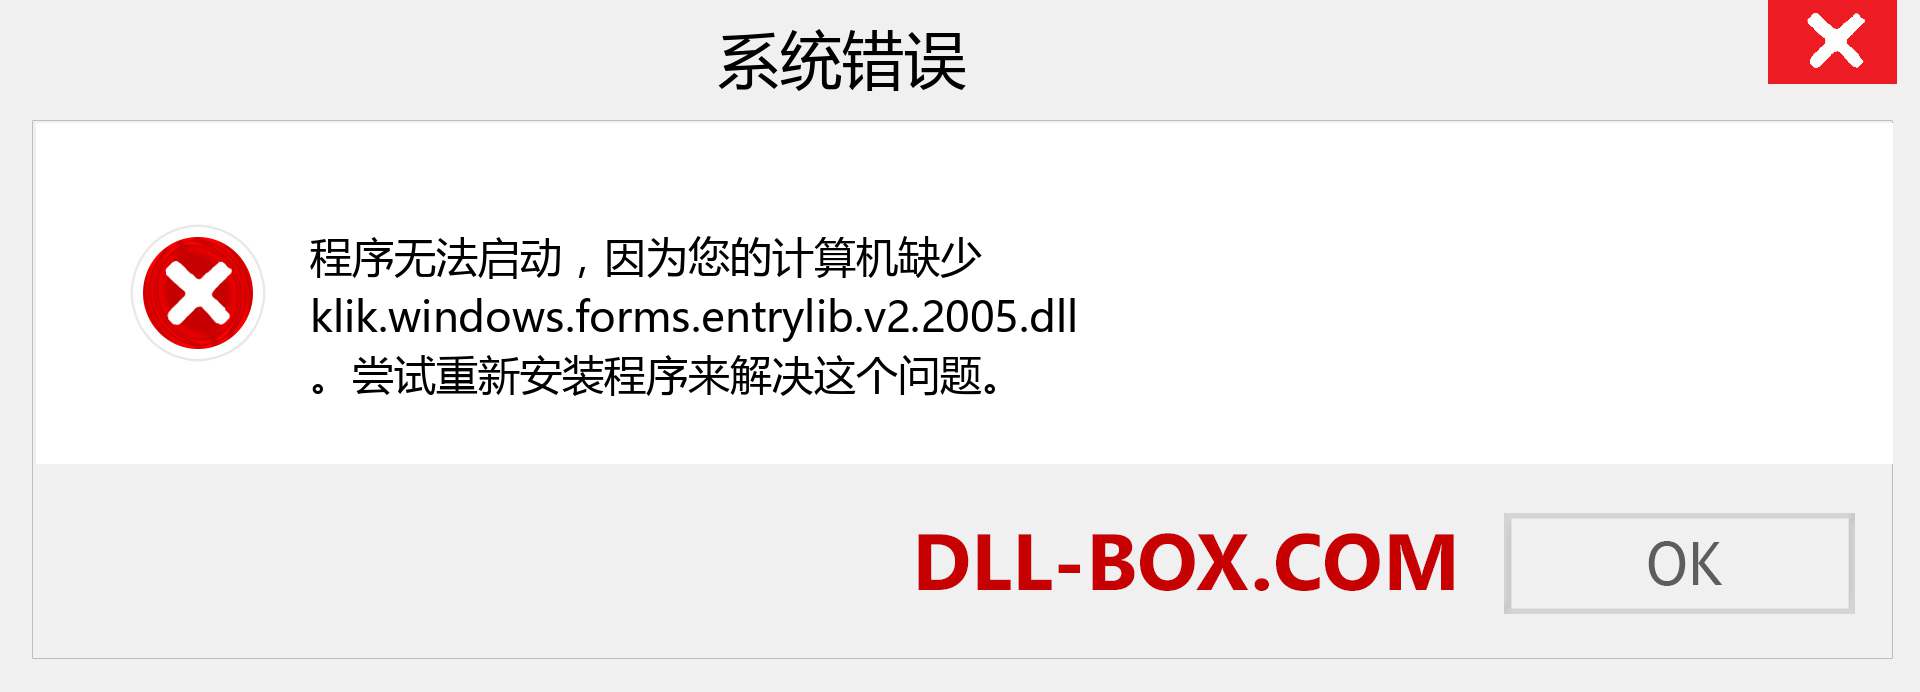 klik.windows.forms.entrylib.v2.2005.dll 文件丢失？。 适用于 Windows 7、8、10 的下载 - 修复 Windows、照片、图像上的 klik.windows.forms.entrylib.v2.2005 dll 丢失错误